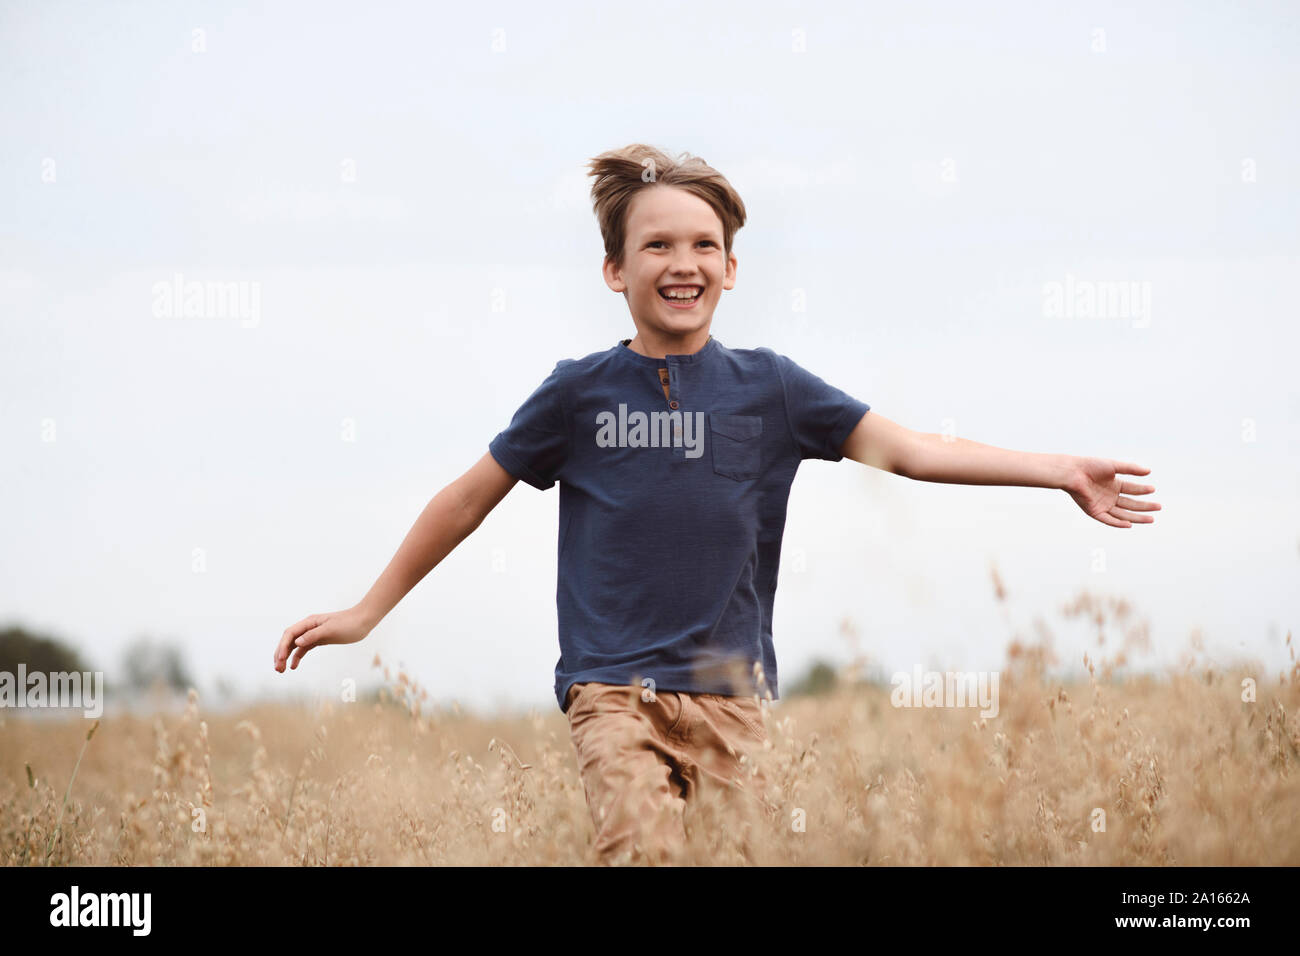 Retrato de risa niño corriendo en un campo de avena Foto de stock